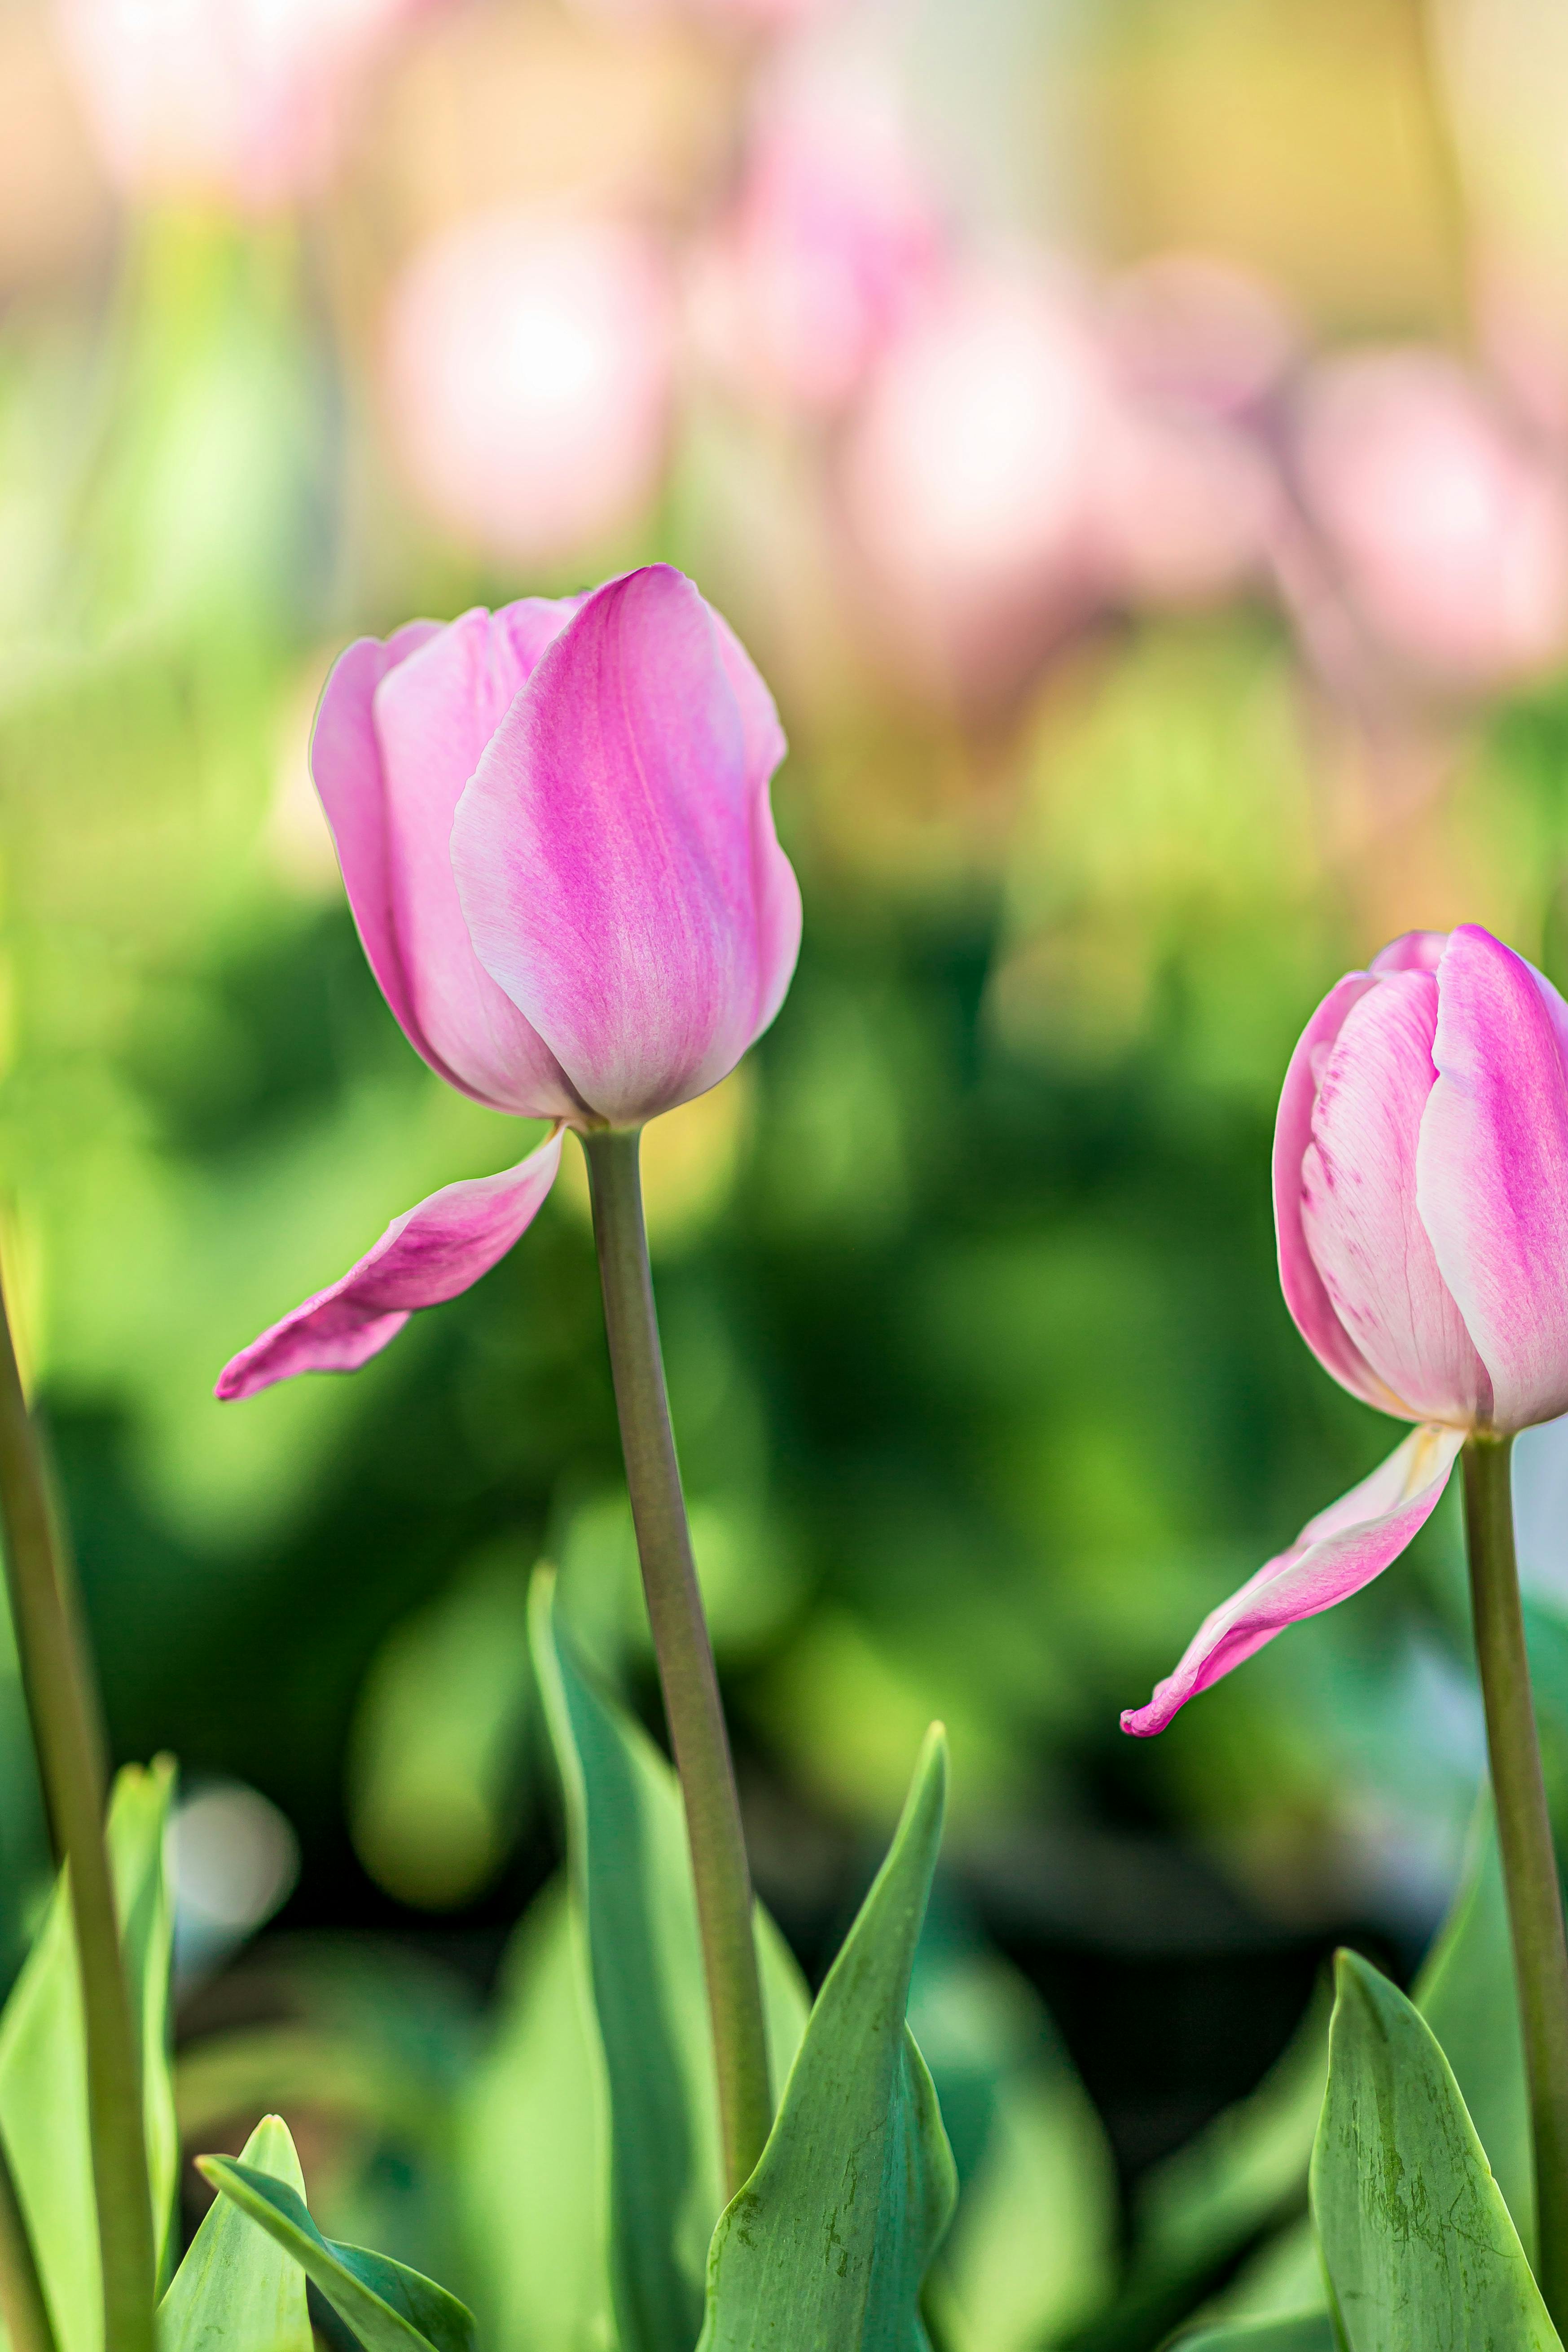 Những bông hoa tulip tinh tế và sắc sảo sẽ khiến trái tim bạn tan chảy. Hãy chiêm ngưỡng những màu sắc rực rỡ trên những cánh hoa tinh khôi này.